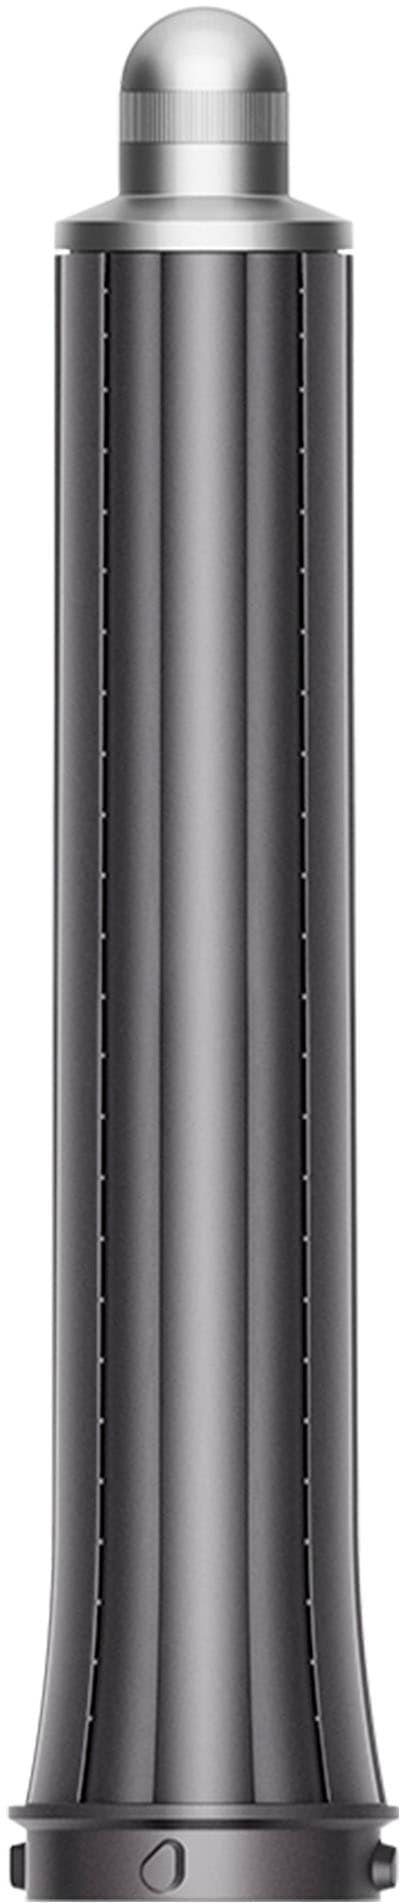 Dyson Airwrap 1.2 inch long barrel - Iron/Nickel_0